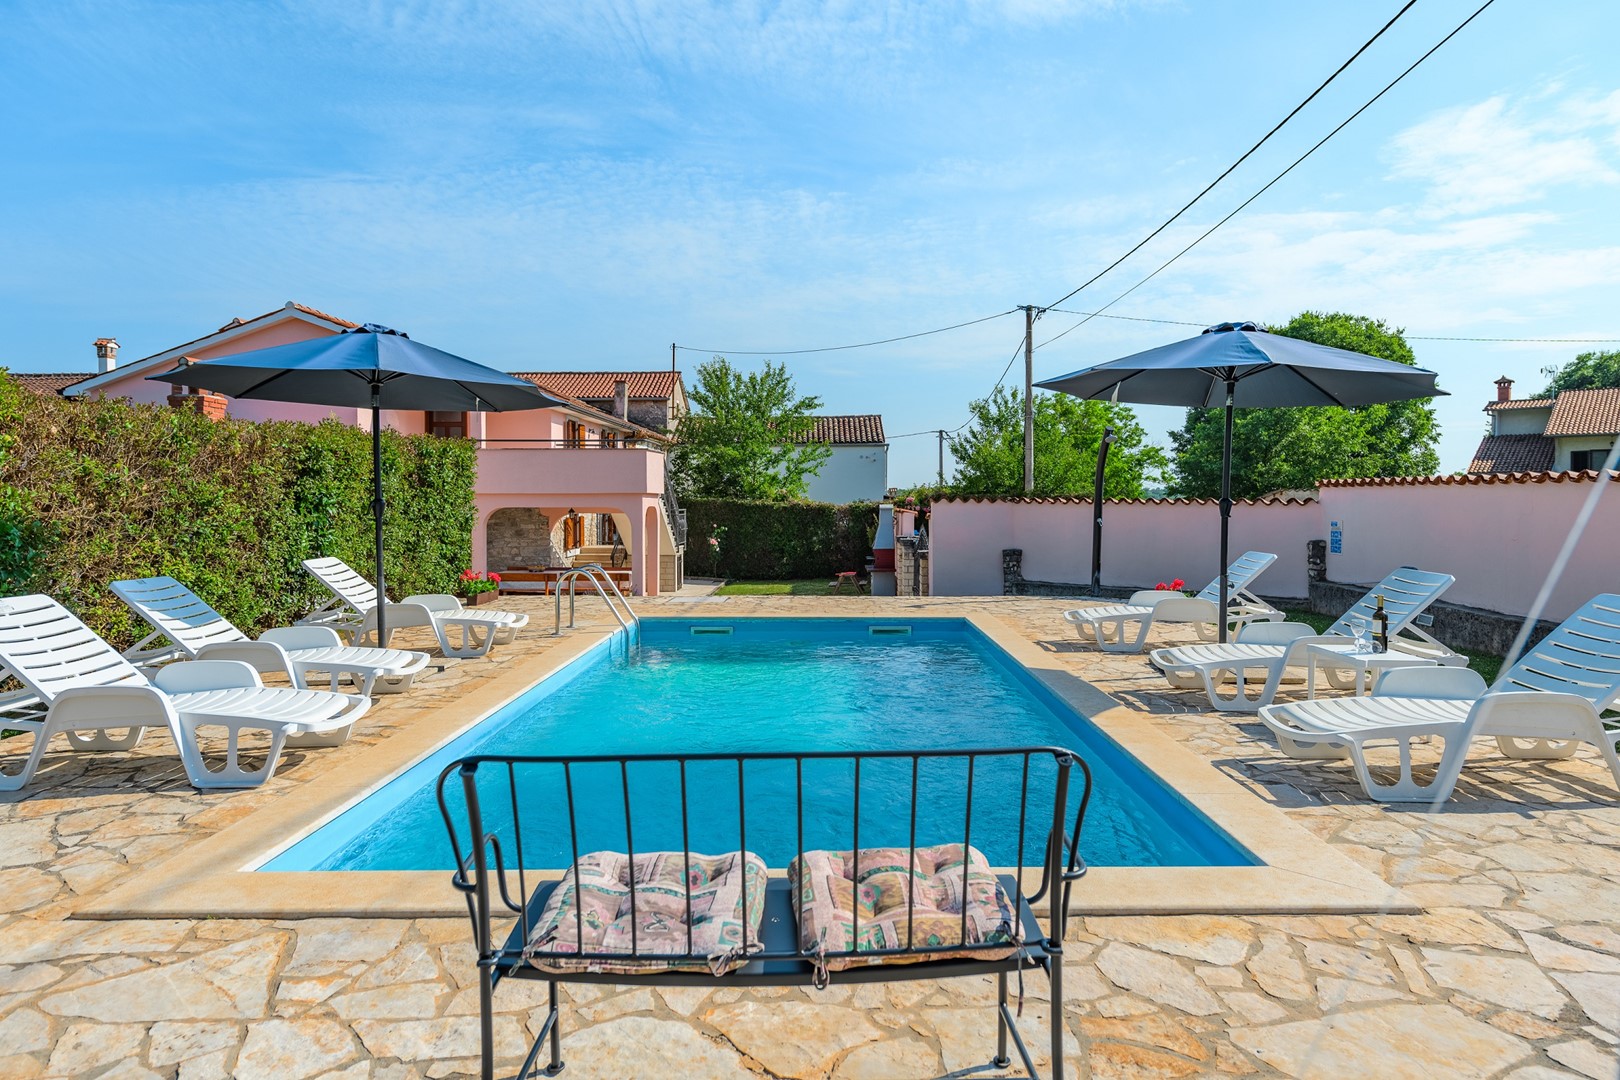 Villa Legovich mit eigenem Pool in Zentralistrien  in Kroatien